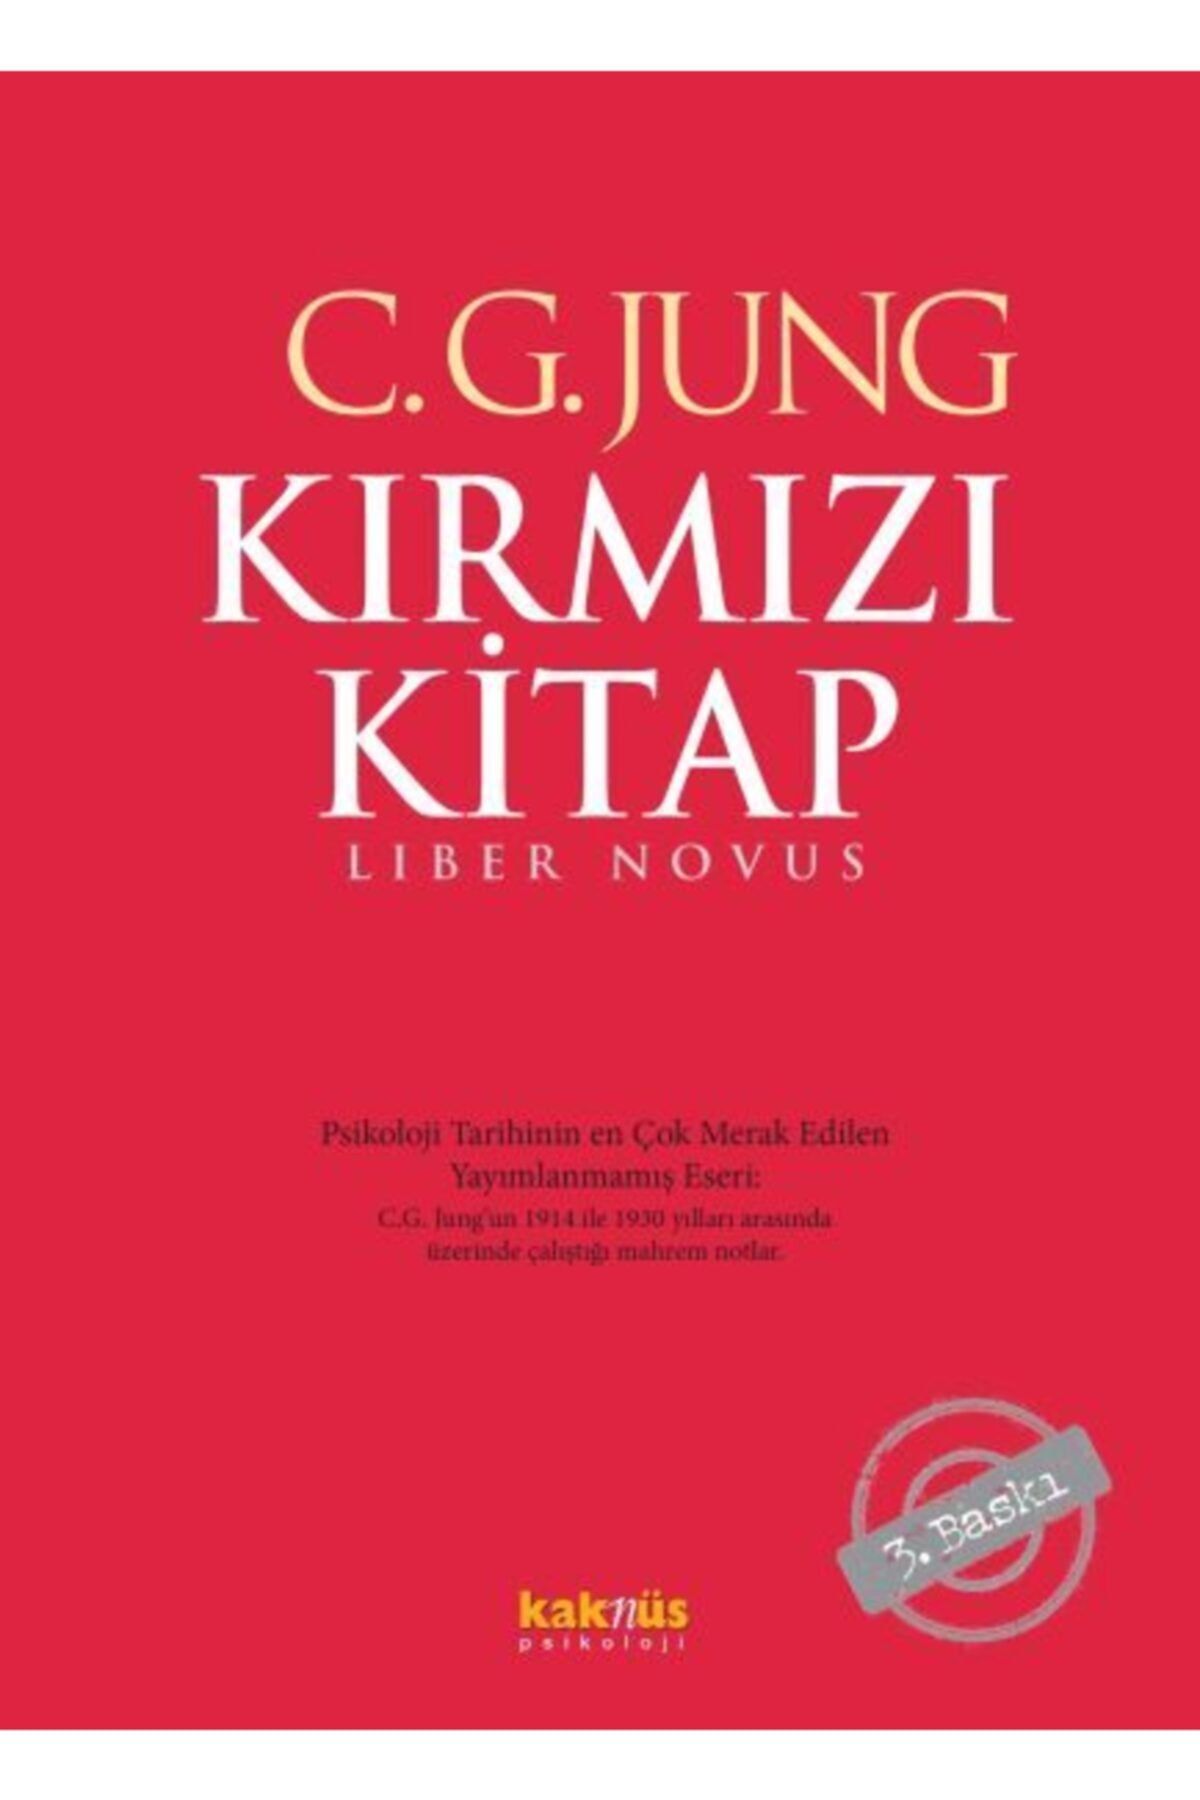 Kaknüs Yayınları - Ders Kitapları Kırmızı Kitap (cillti)